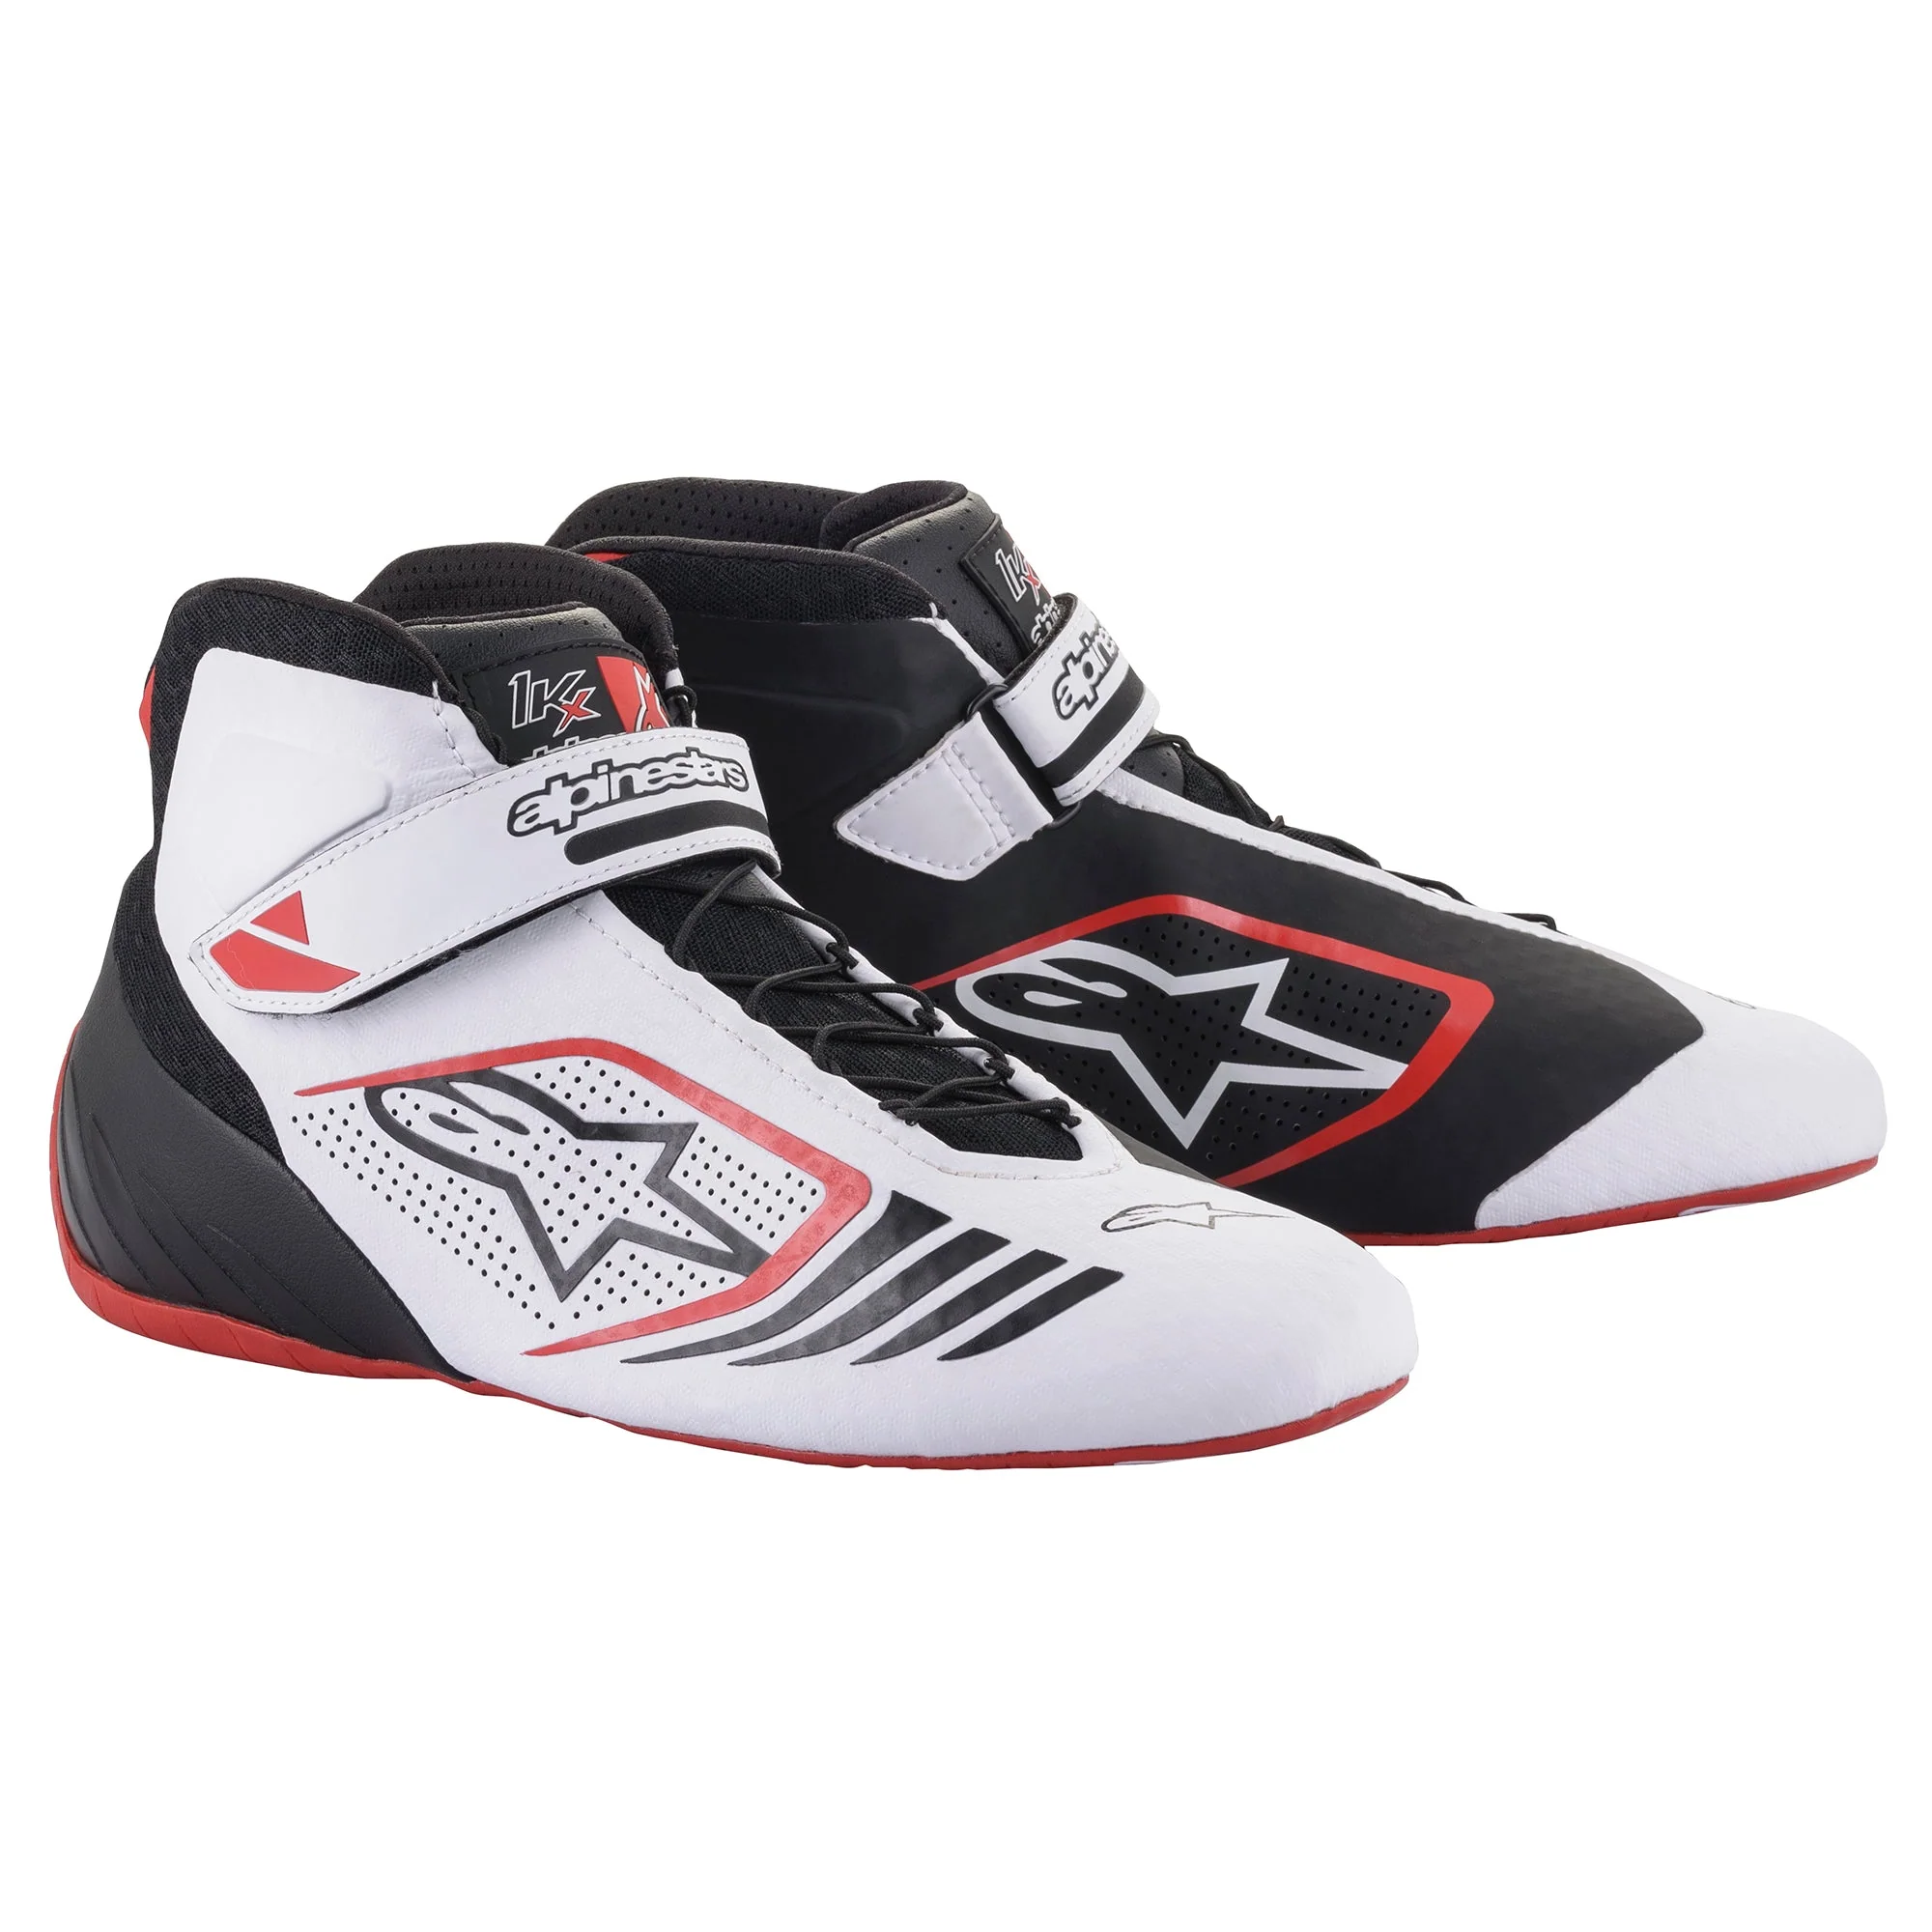 Alpinestars TECH-1 KX ботинки для картинга, черный/белый/красный, р-р 41(EUR)/8.5(US)/7.5(UK). DARK-STOCK.RU